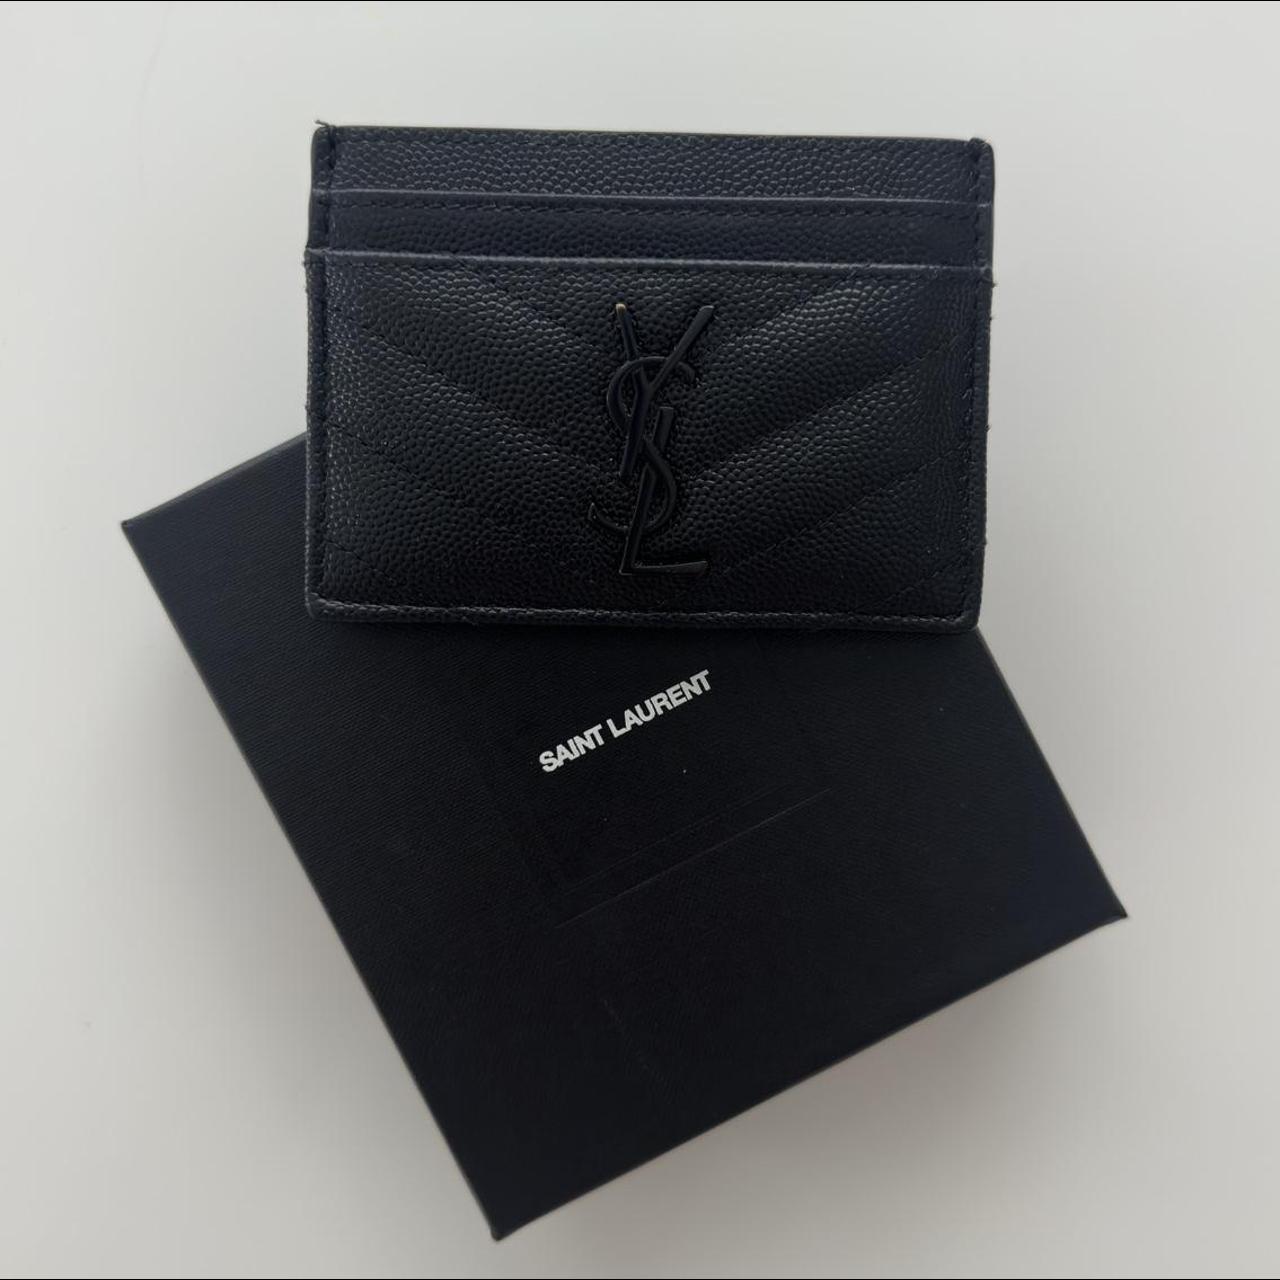 Saint Laurent Leather Card Holder - Black - Wallets